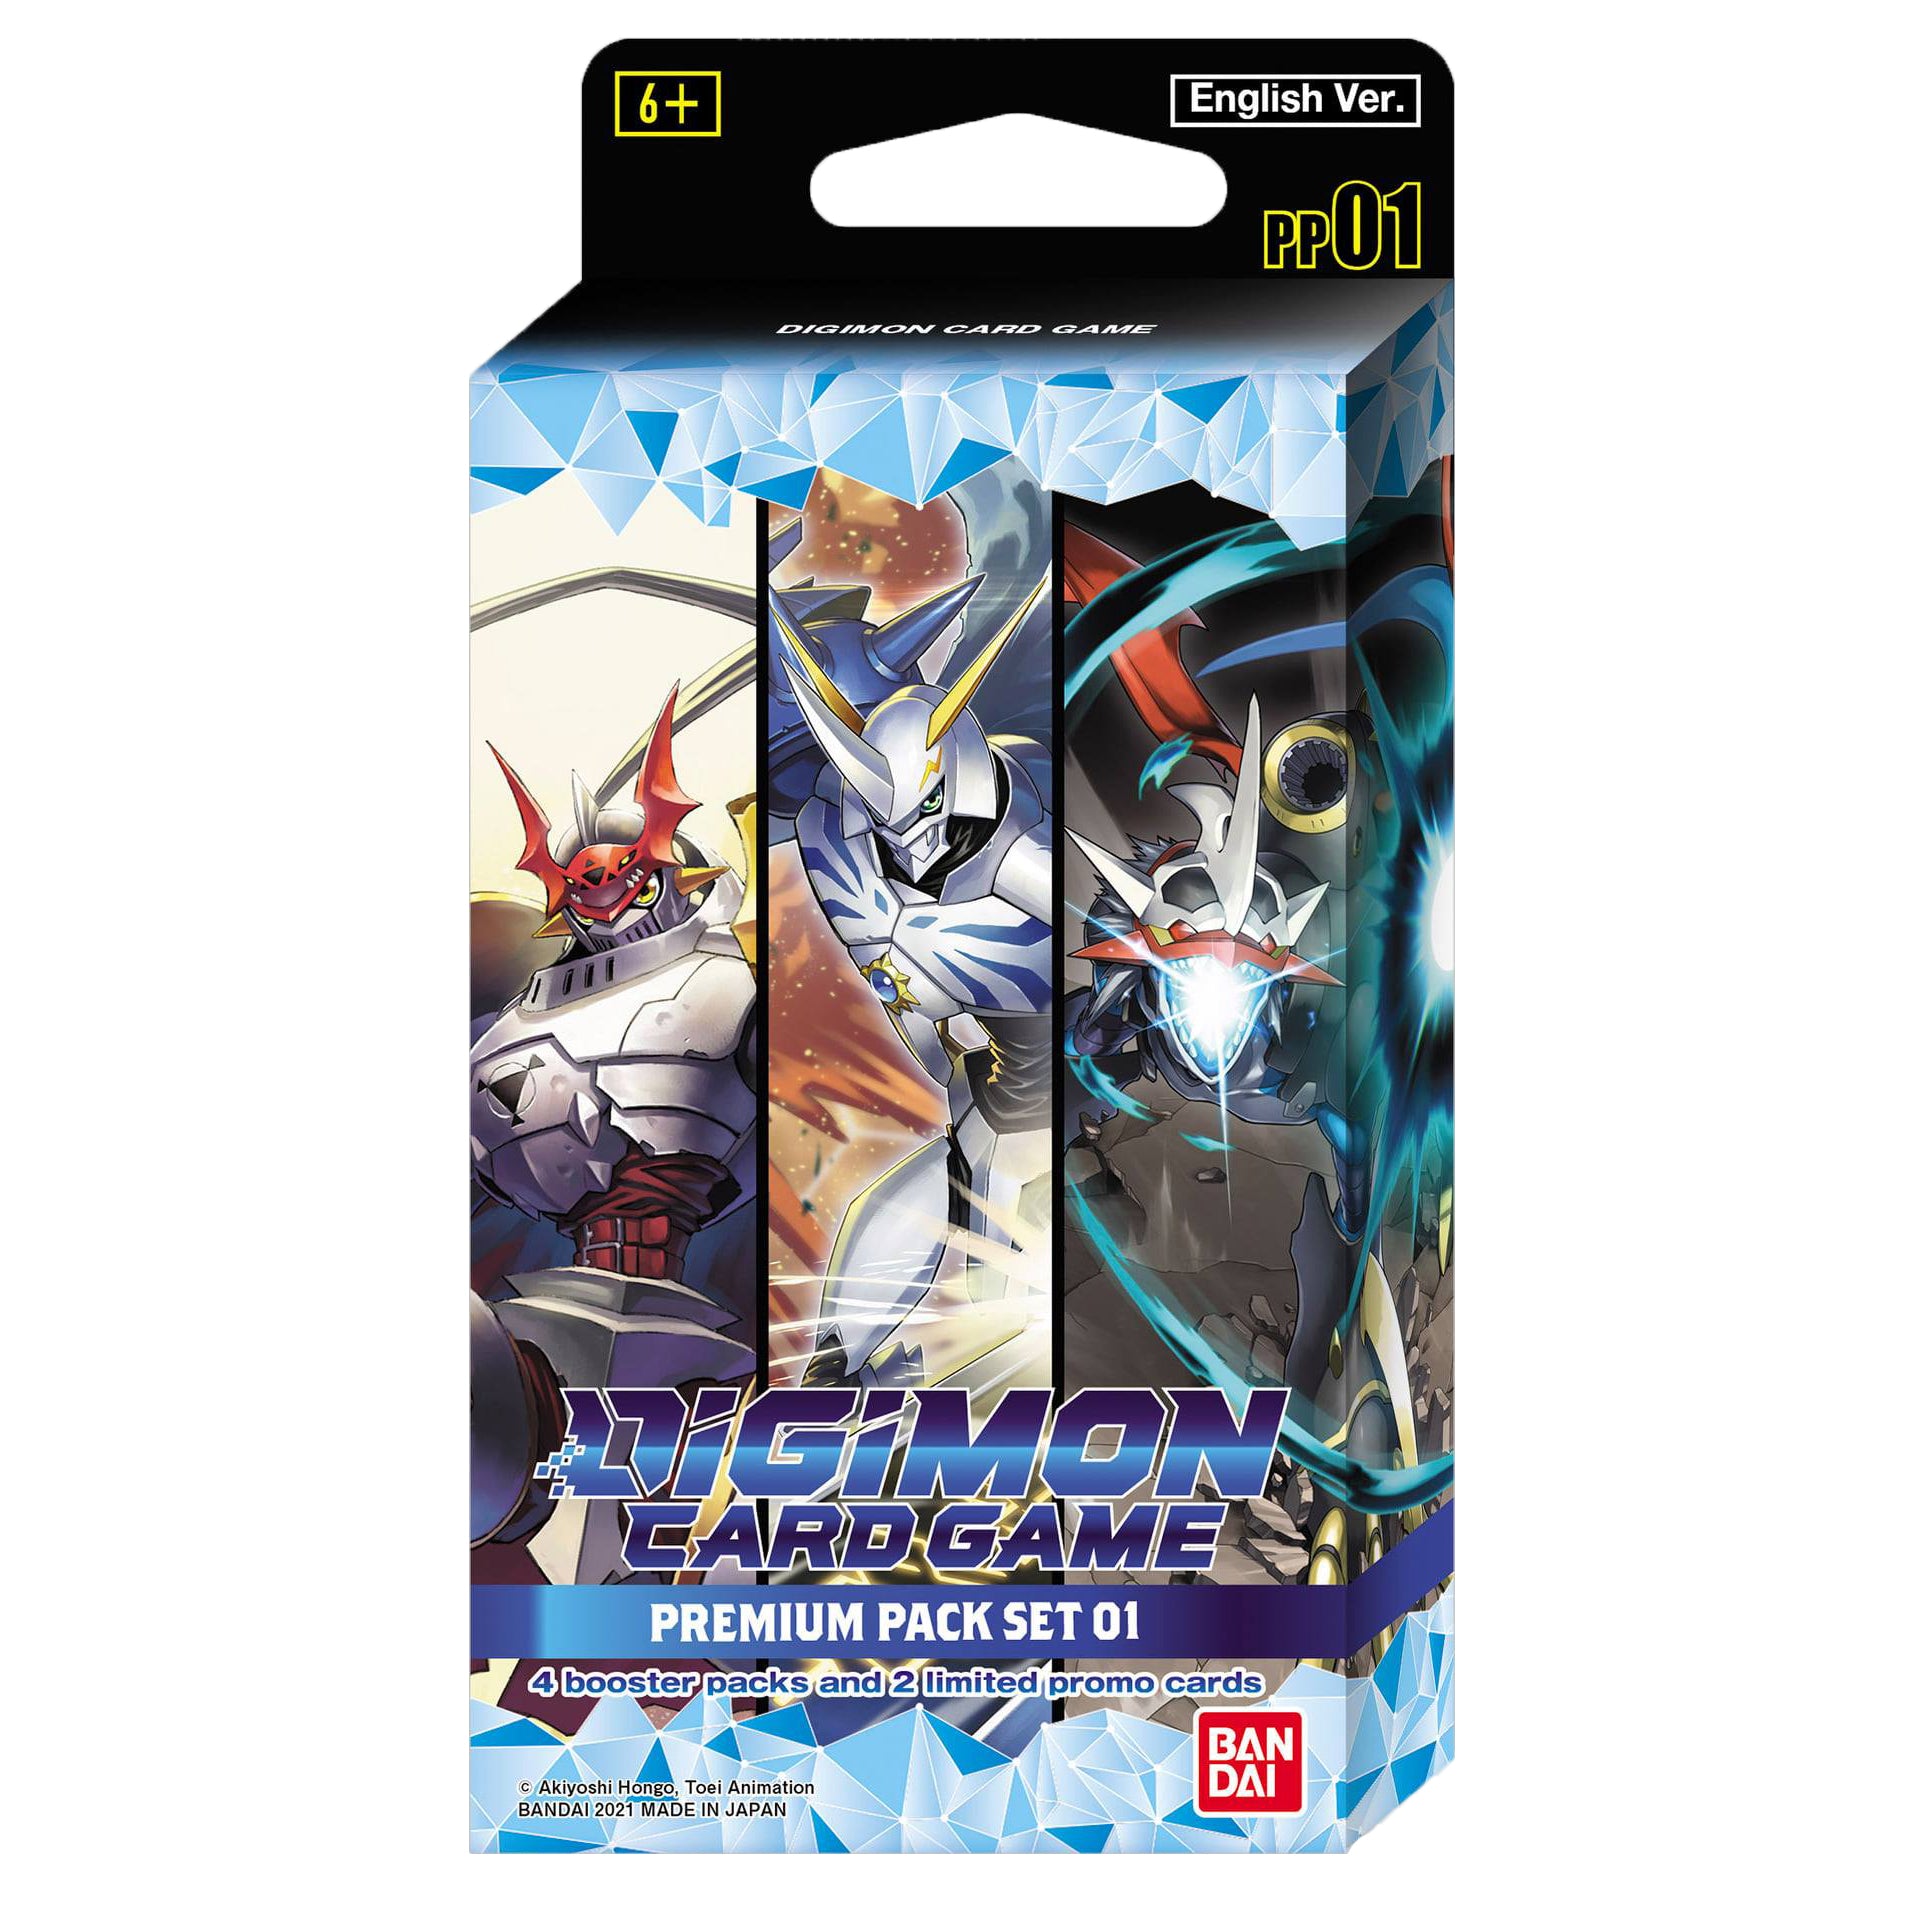 Digimon Premium Pack 1 PP01 English